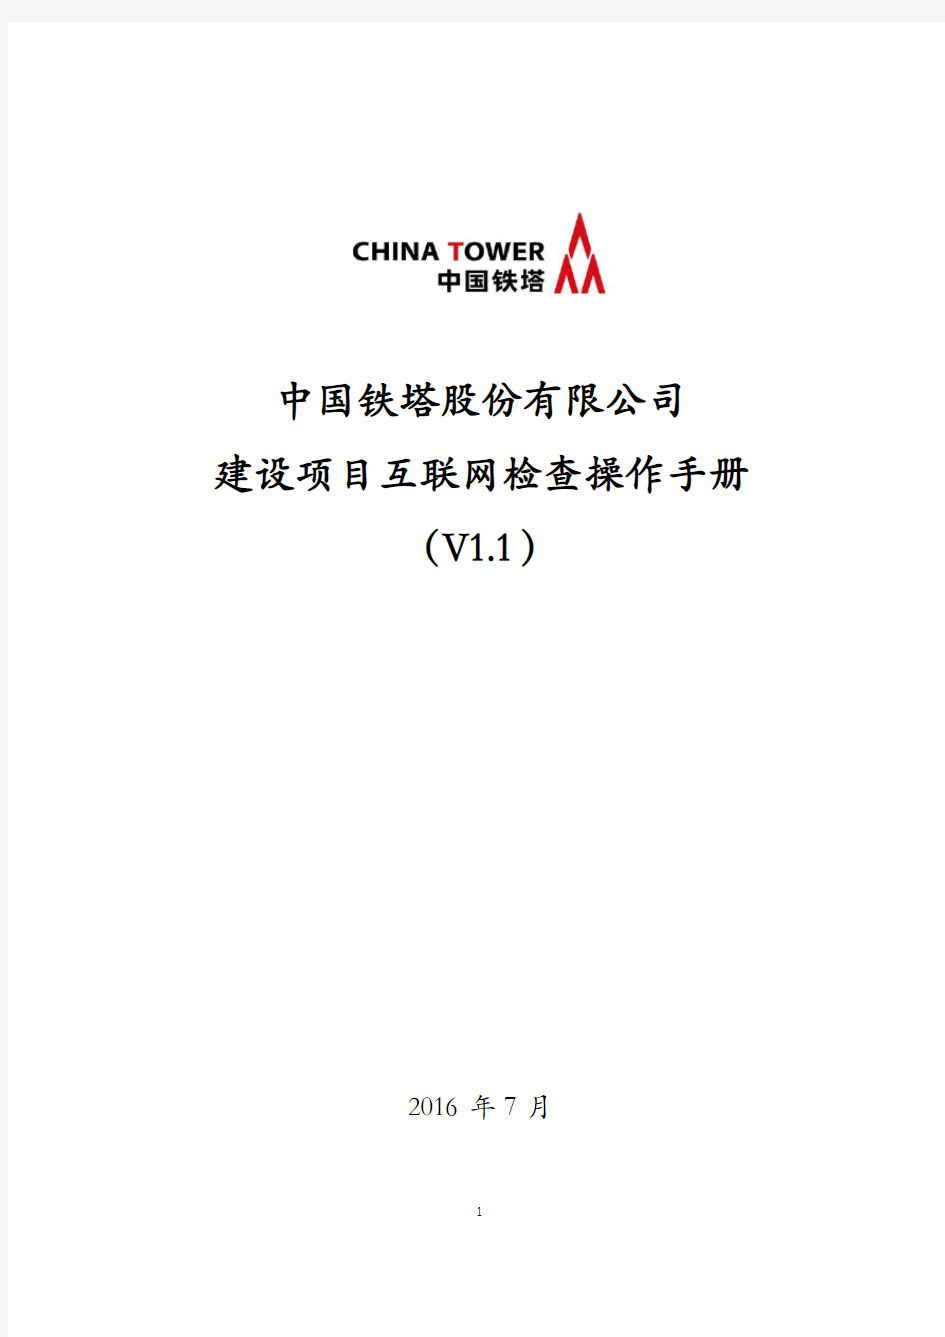 中国铁塔股份有限公司建设项目互联网检查操作手册(V1.1)